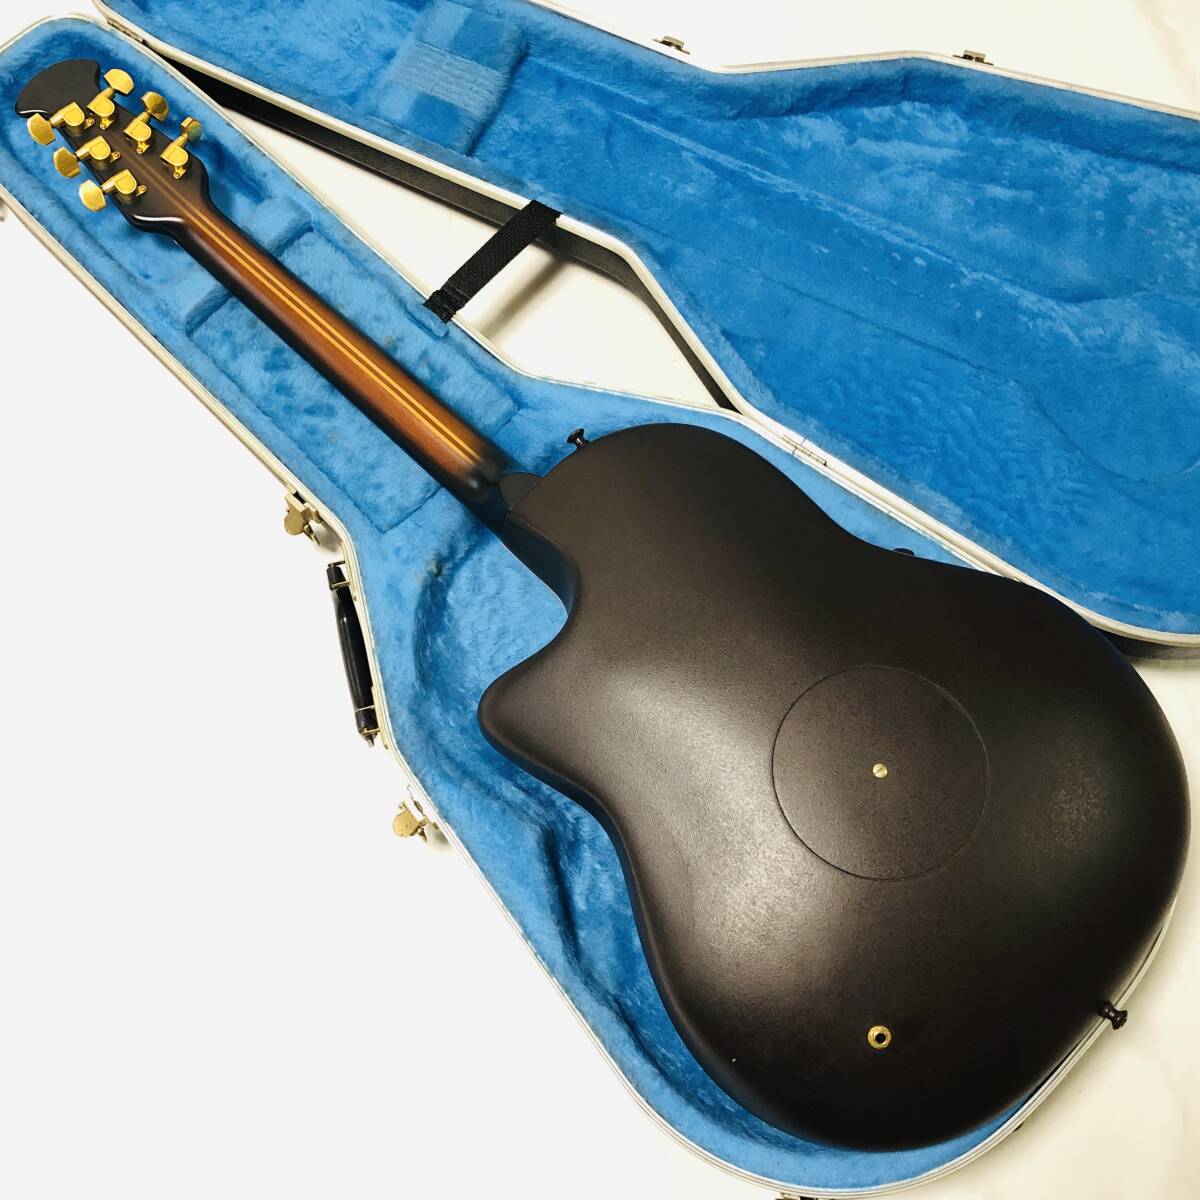 Ovation 1868 Elite USA производства Electric Acoustic Guitar Ovation Elite электрический акустическая гитара электроакустическая гитара 